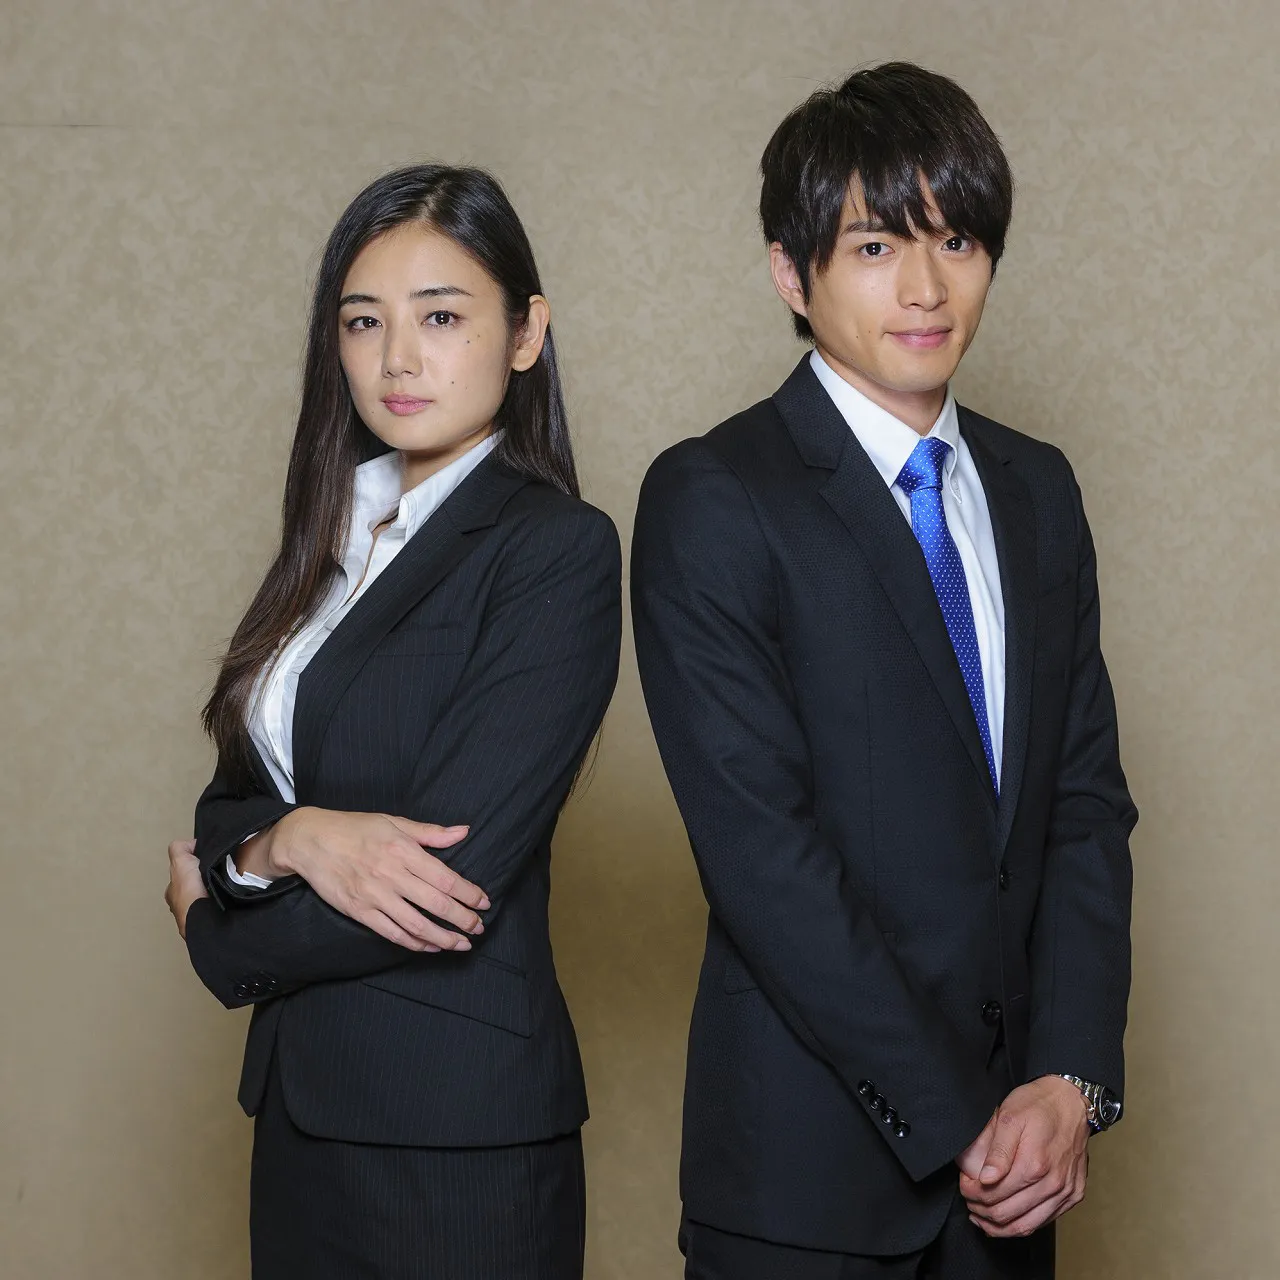 「オトナ高校　エピソード0」で主演を務める白洲迅(右)と、セクシー官僚役の片山萌美(左)